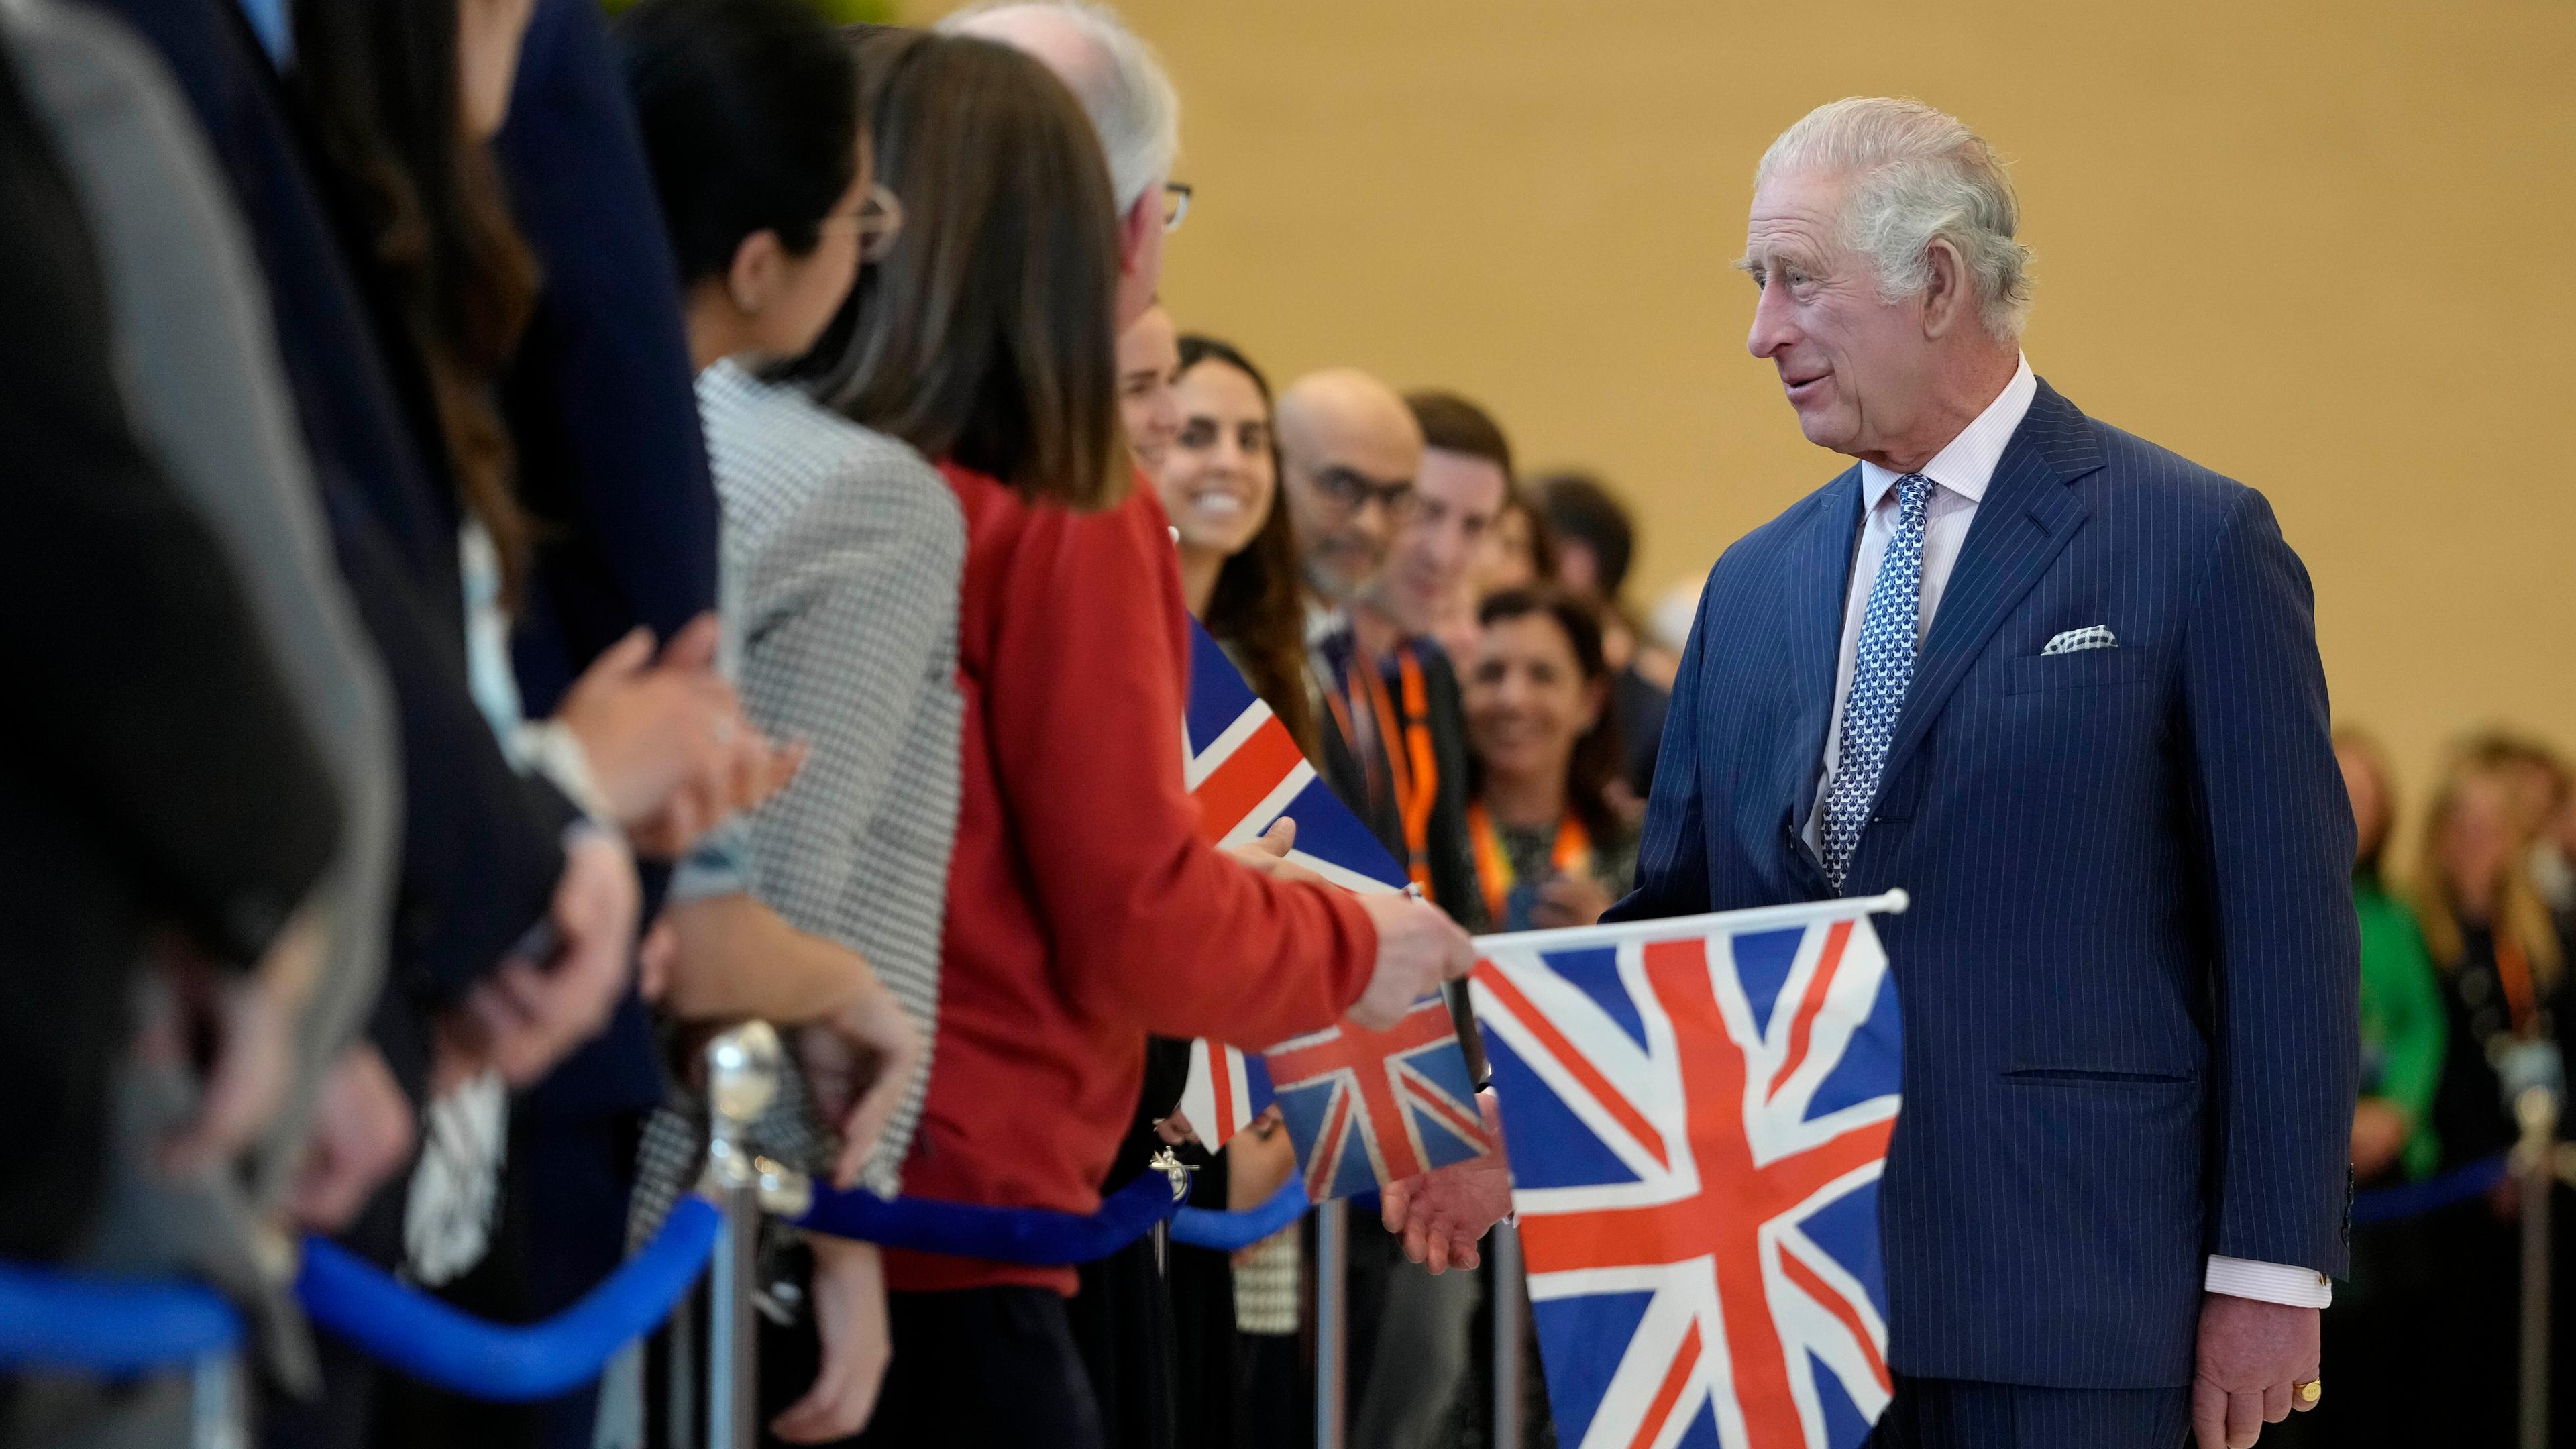 König Charles III. begrüßt Fans während eines Besuchs in Brüssel.